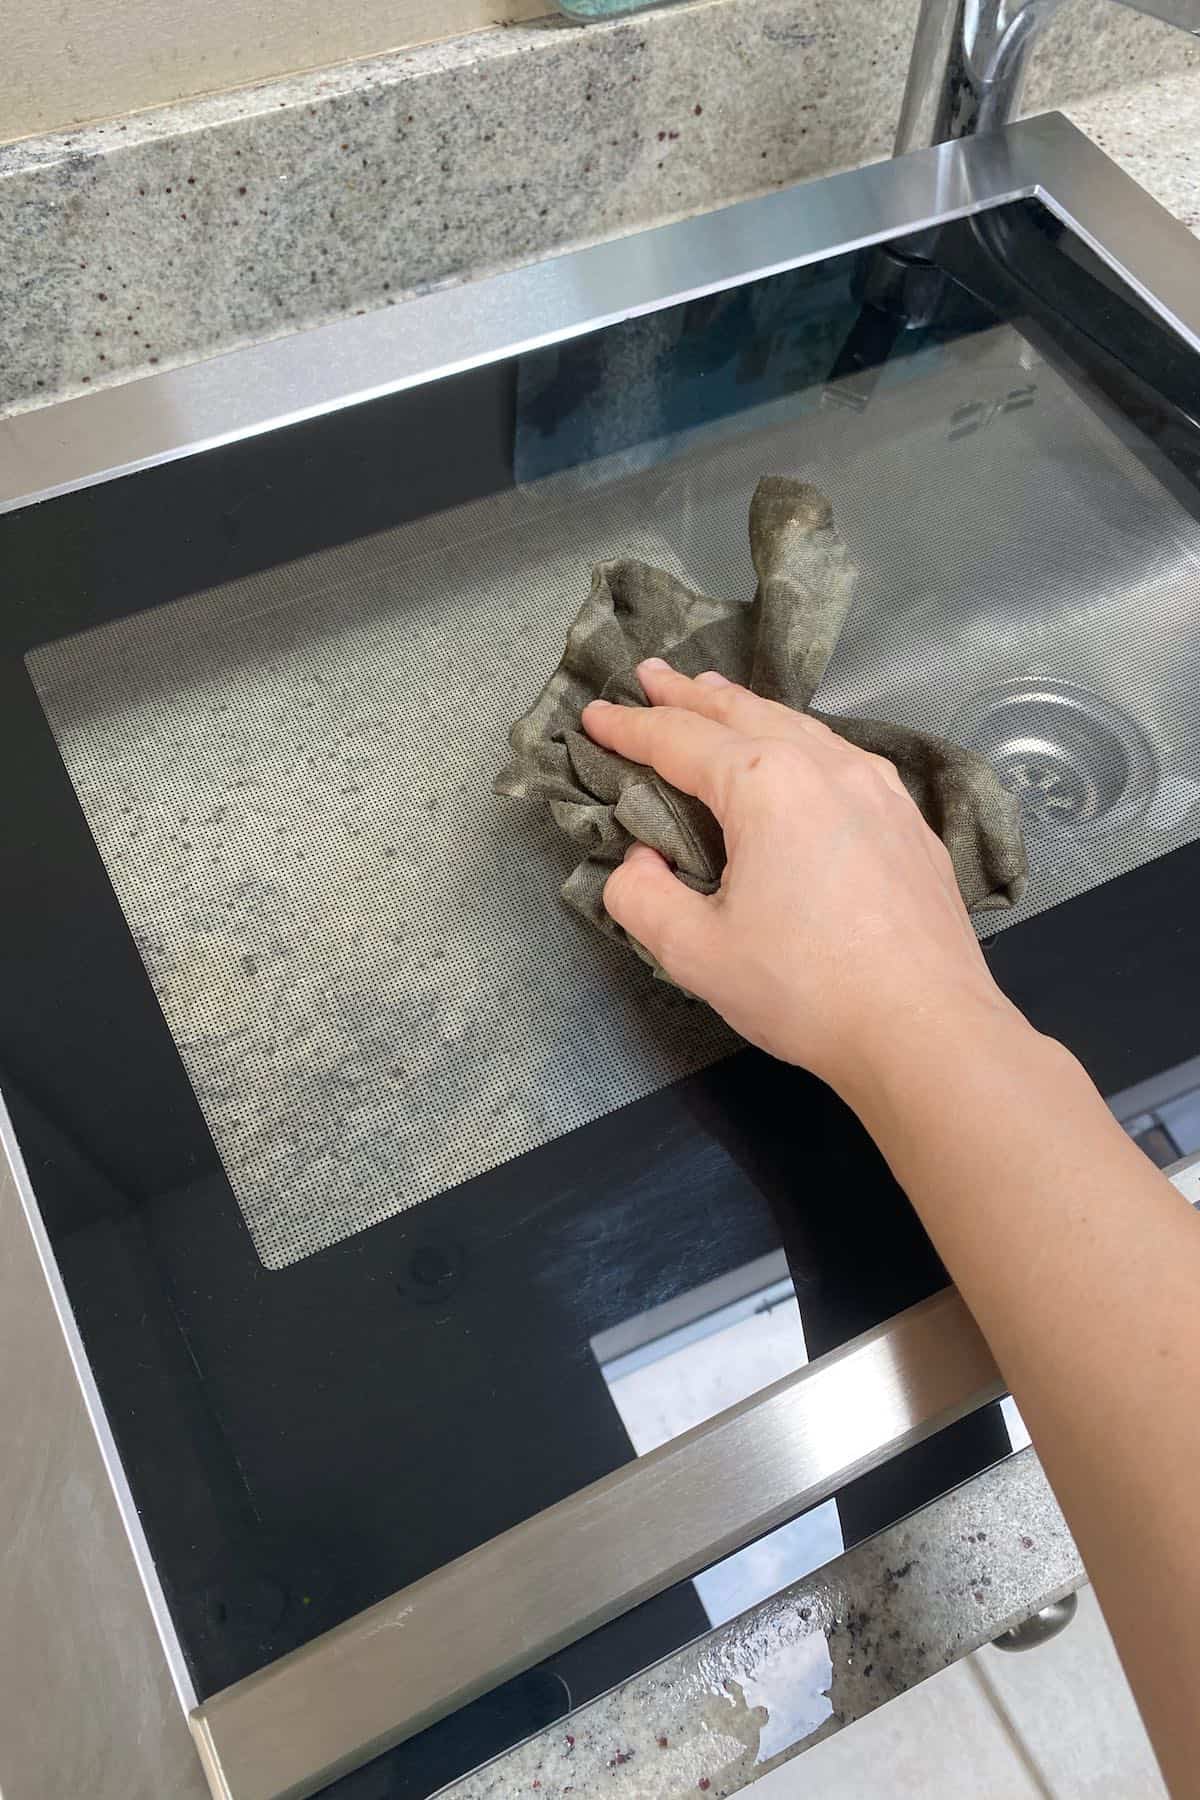 Wiping down an oven door